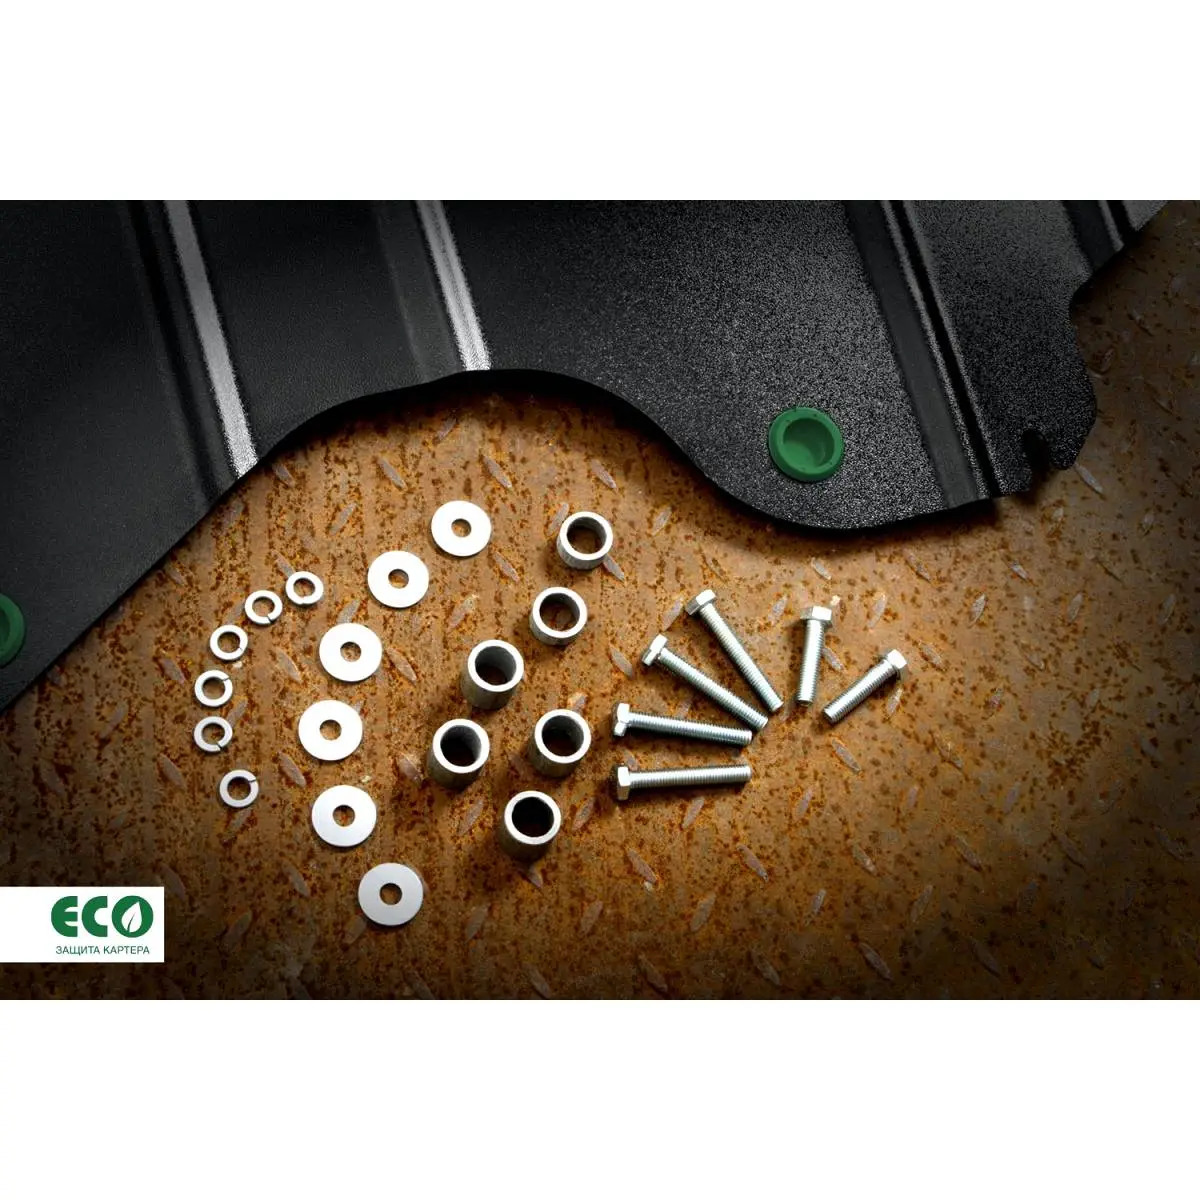 Комплект защиты топливных трубок и крепежа Eco GRVMU08 1437099101 I H8E8 eco3639720 изображение 2